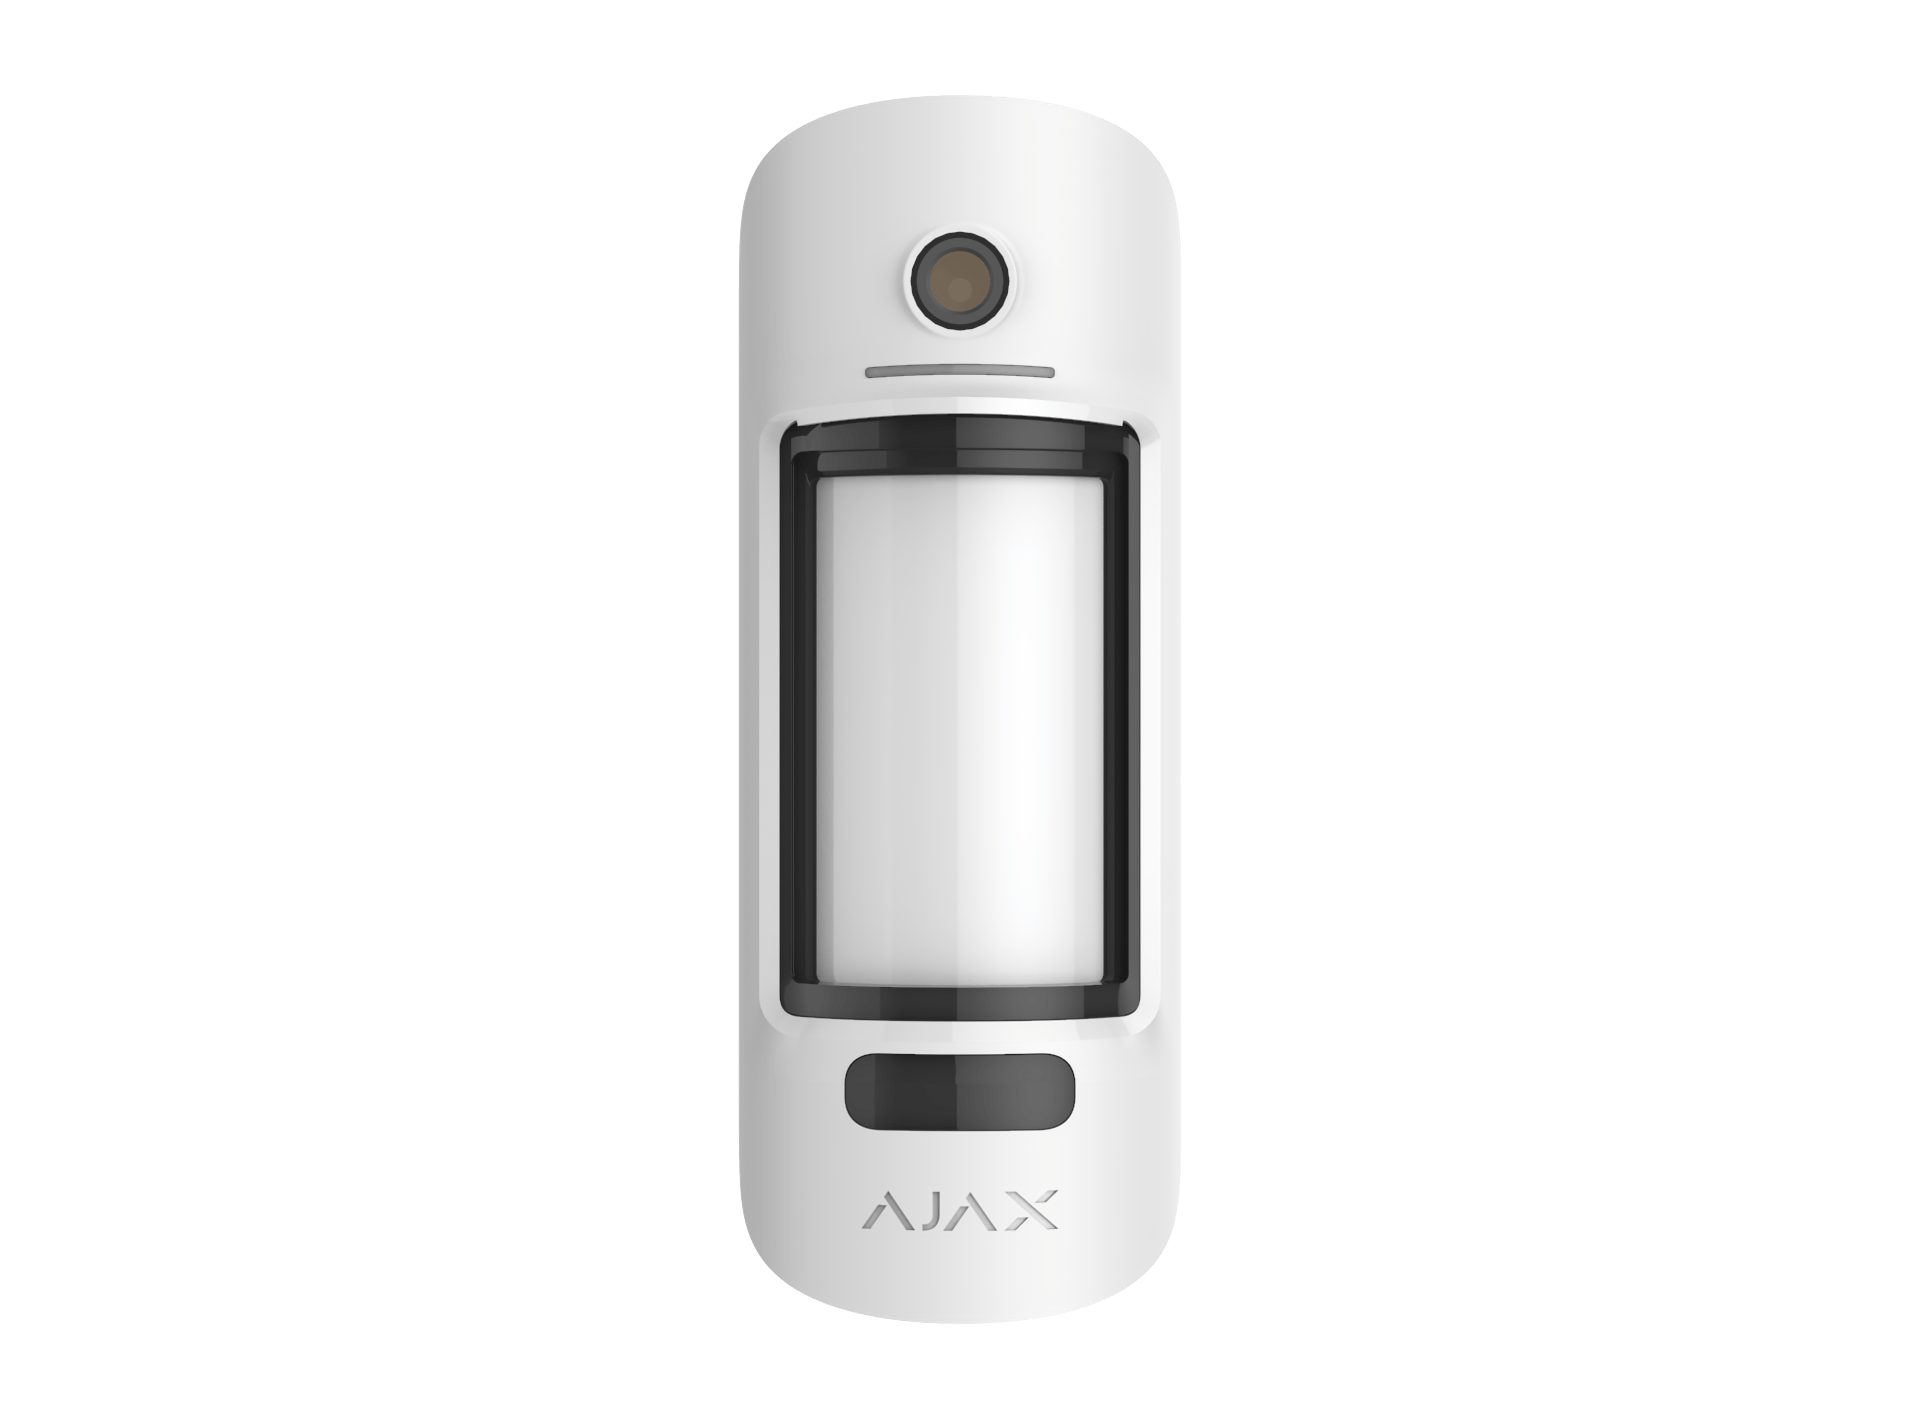 Outdoor motion detector for Ajax alarm - Ajax MC Outdoor